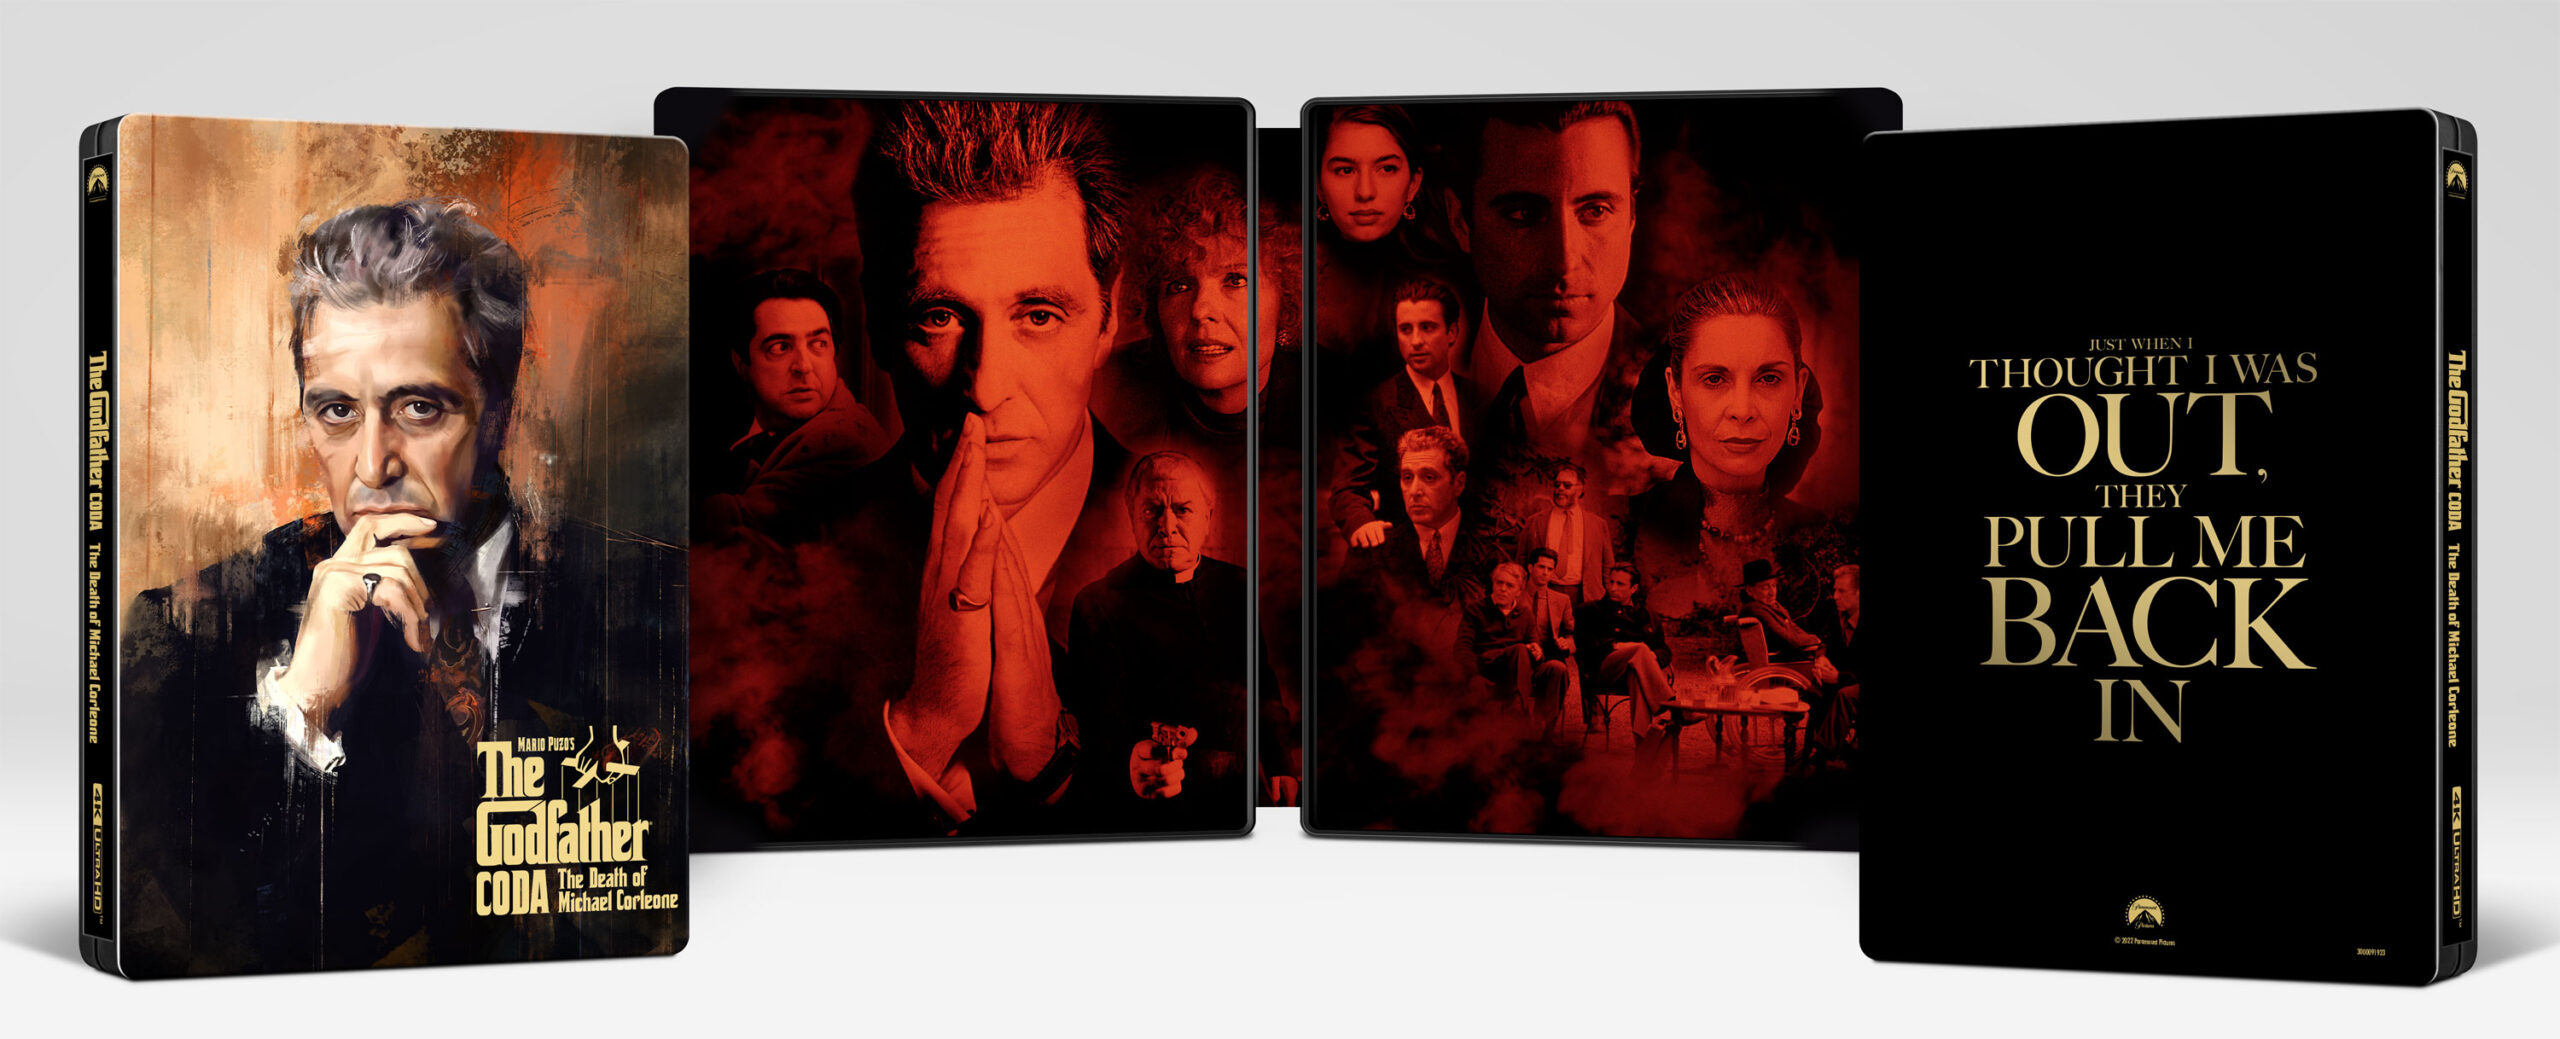 Il Padrino Coda: La morte di Michael Corleone in Steelbook 4K UHD con Blu-ray solo su Amazon